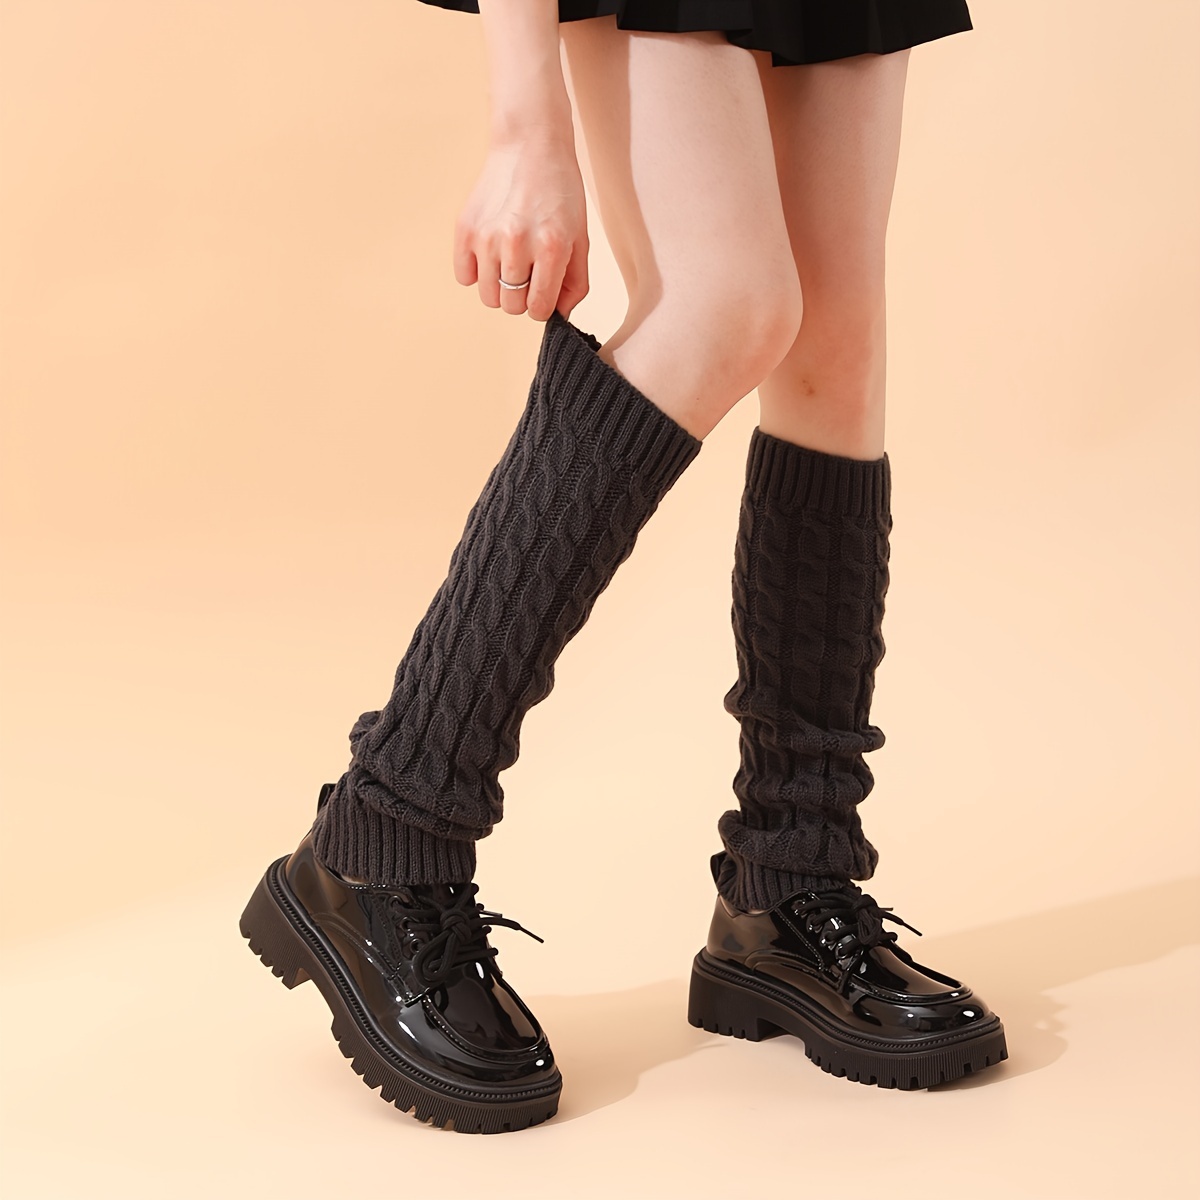 Women Winter Warm Knit Crochet High Knee Leg Warmers Leggings Boot